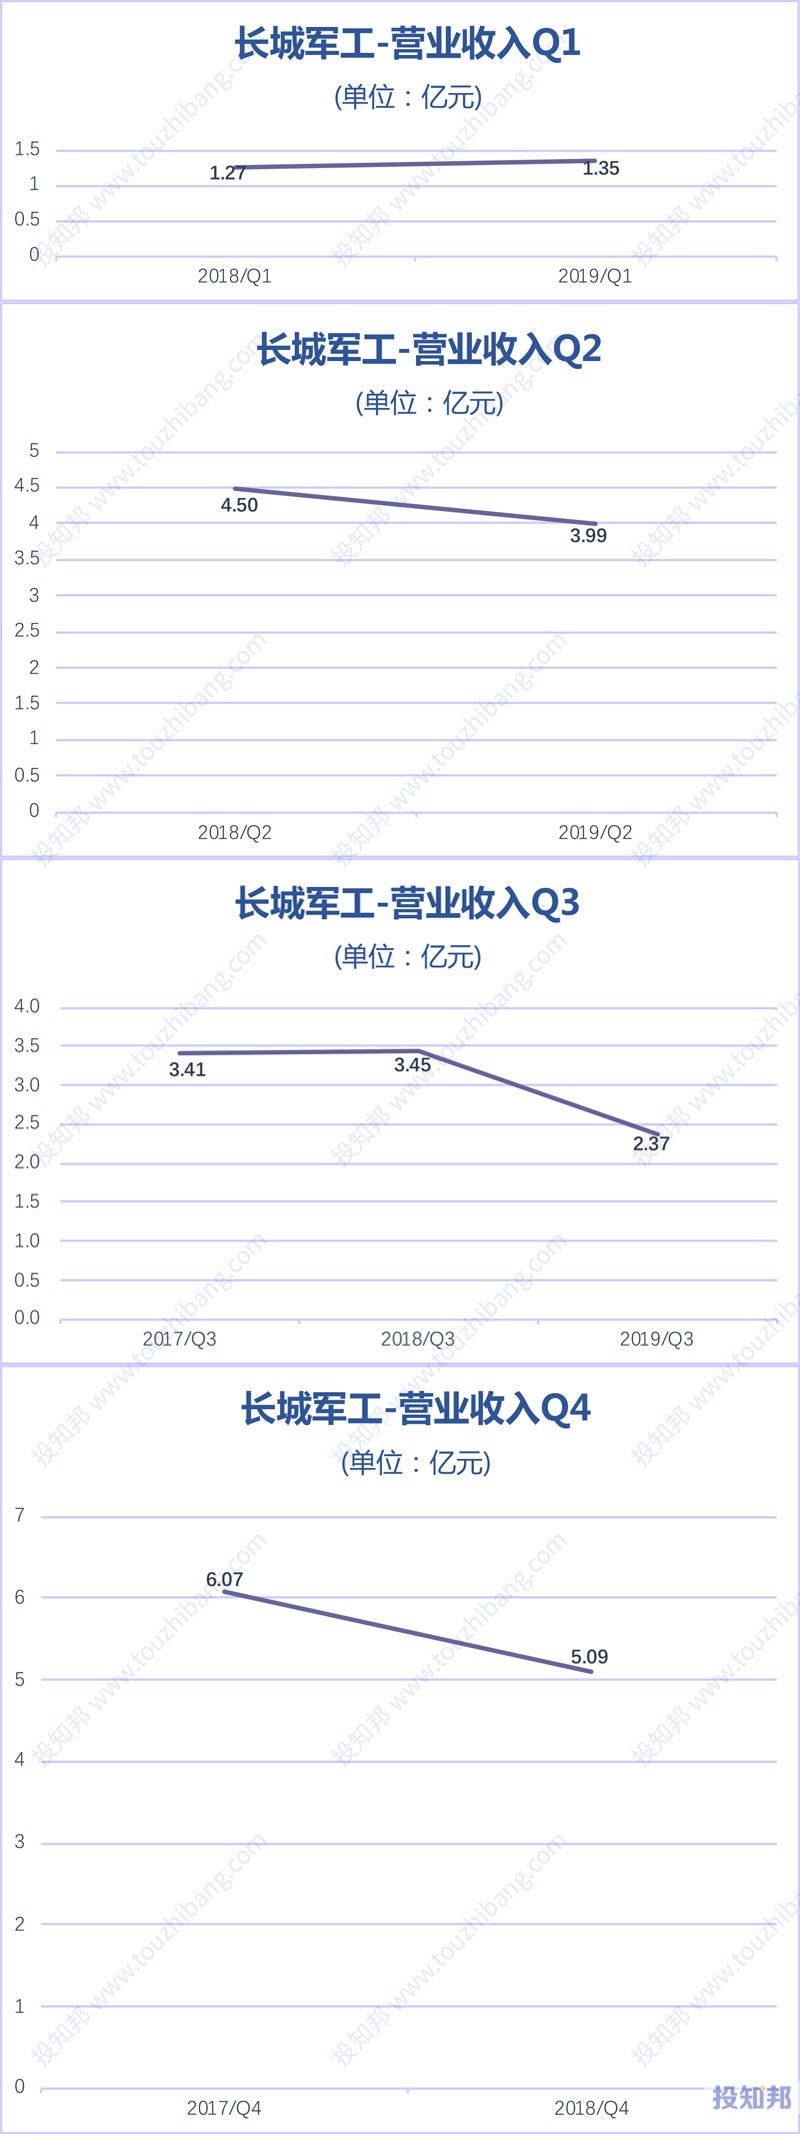 图解长城军工(601606)财报数据(2017年~2019年Q3)